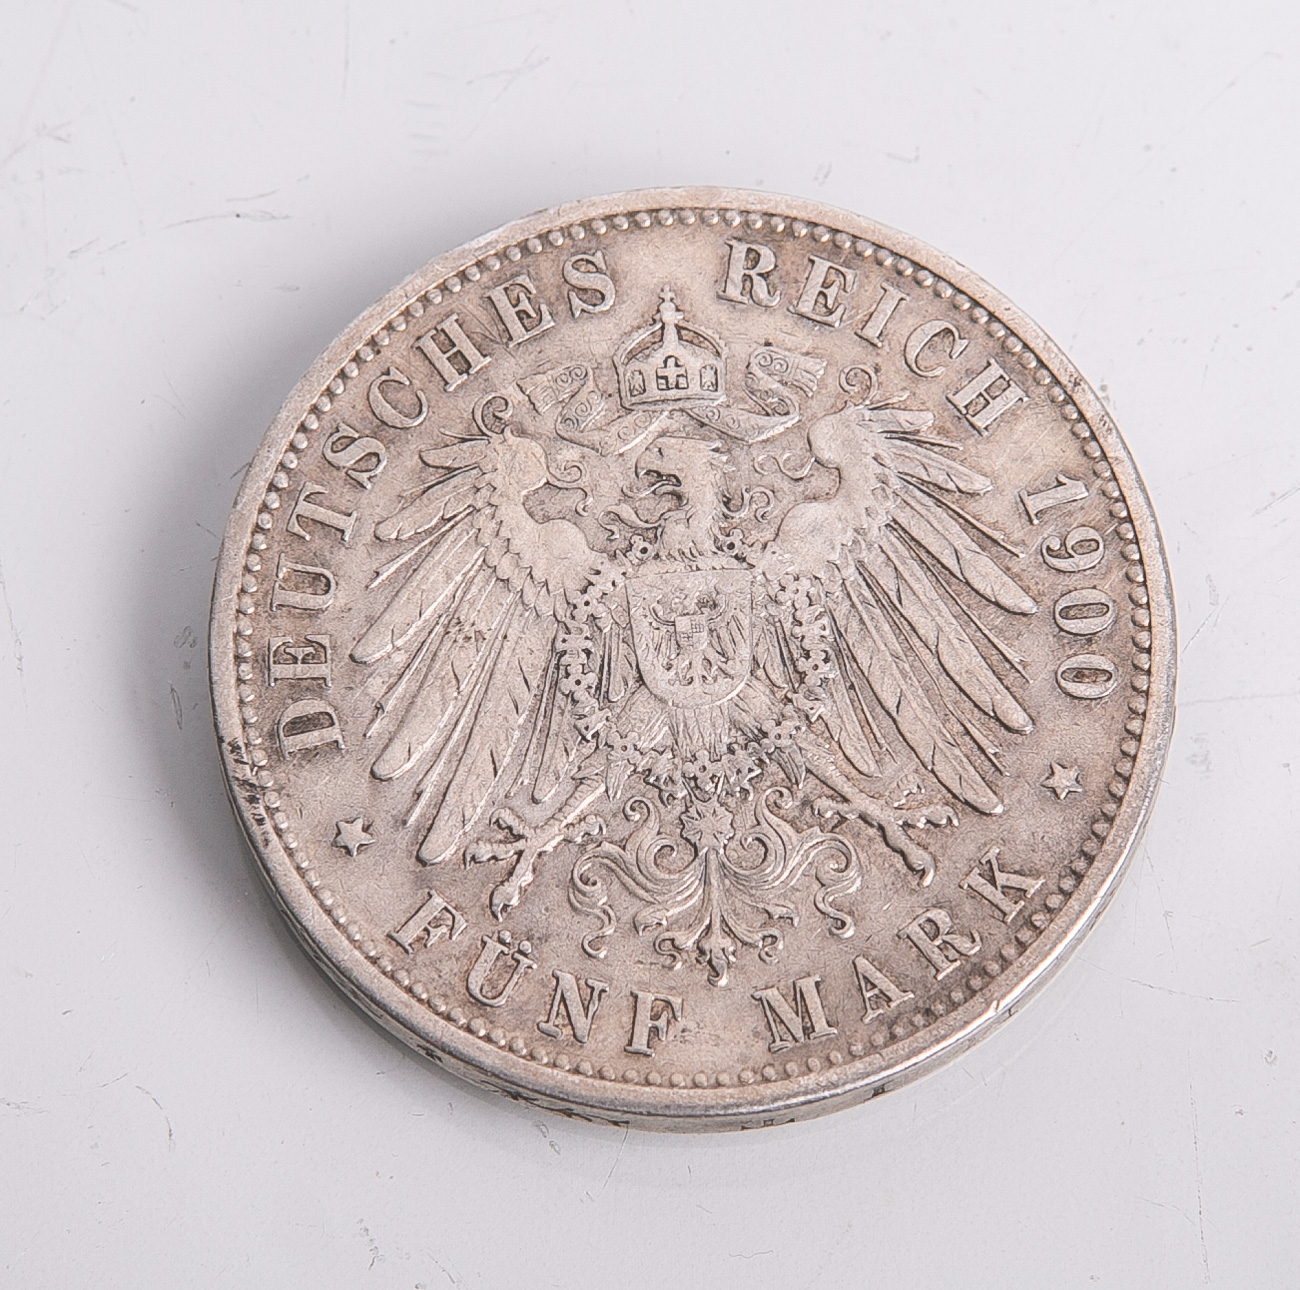 5 Mark-Silbermünze, Baden (1900), Friedrich Großherzog von Baden, Prägungsstätte G, ss - Bild 2 aus 2